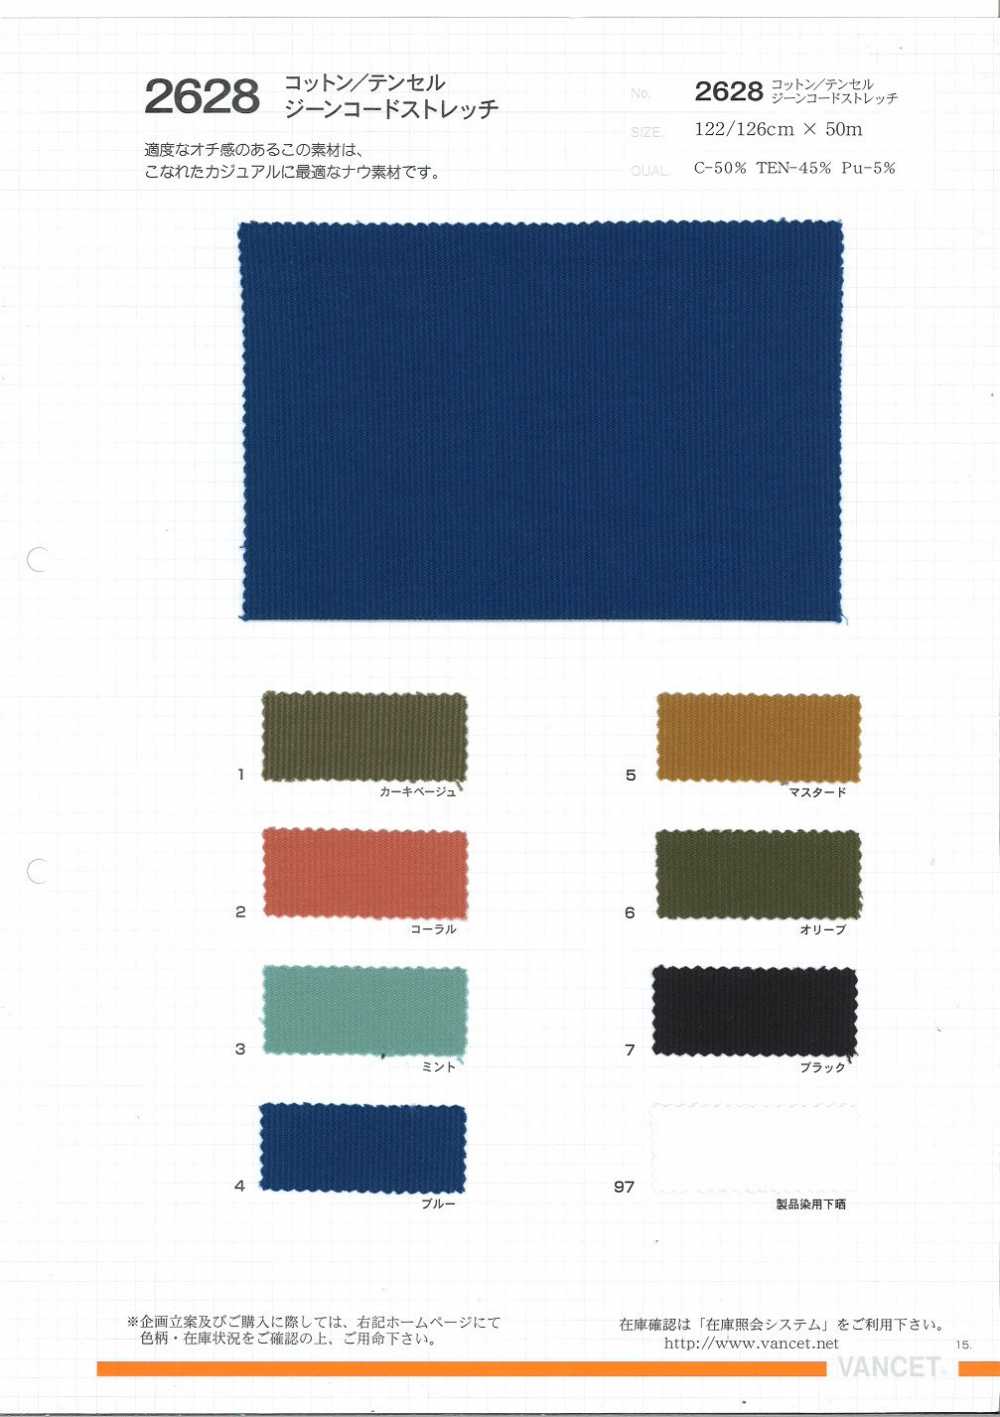 2628 Estiramiento De Cordón Genético De Tencel/algodón[Fabrica Textil] VANCET